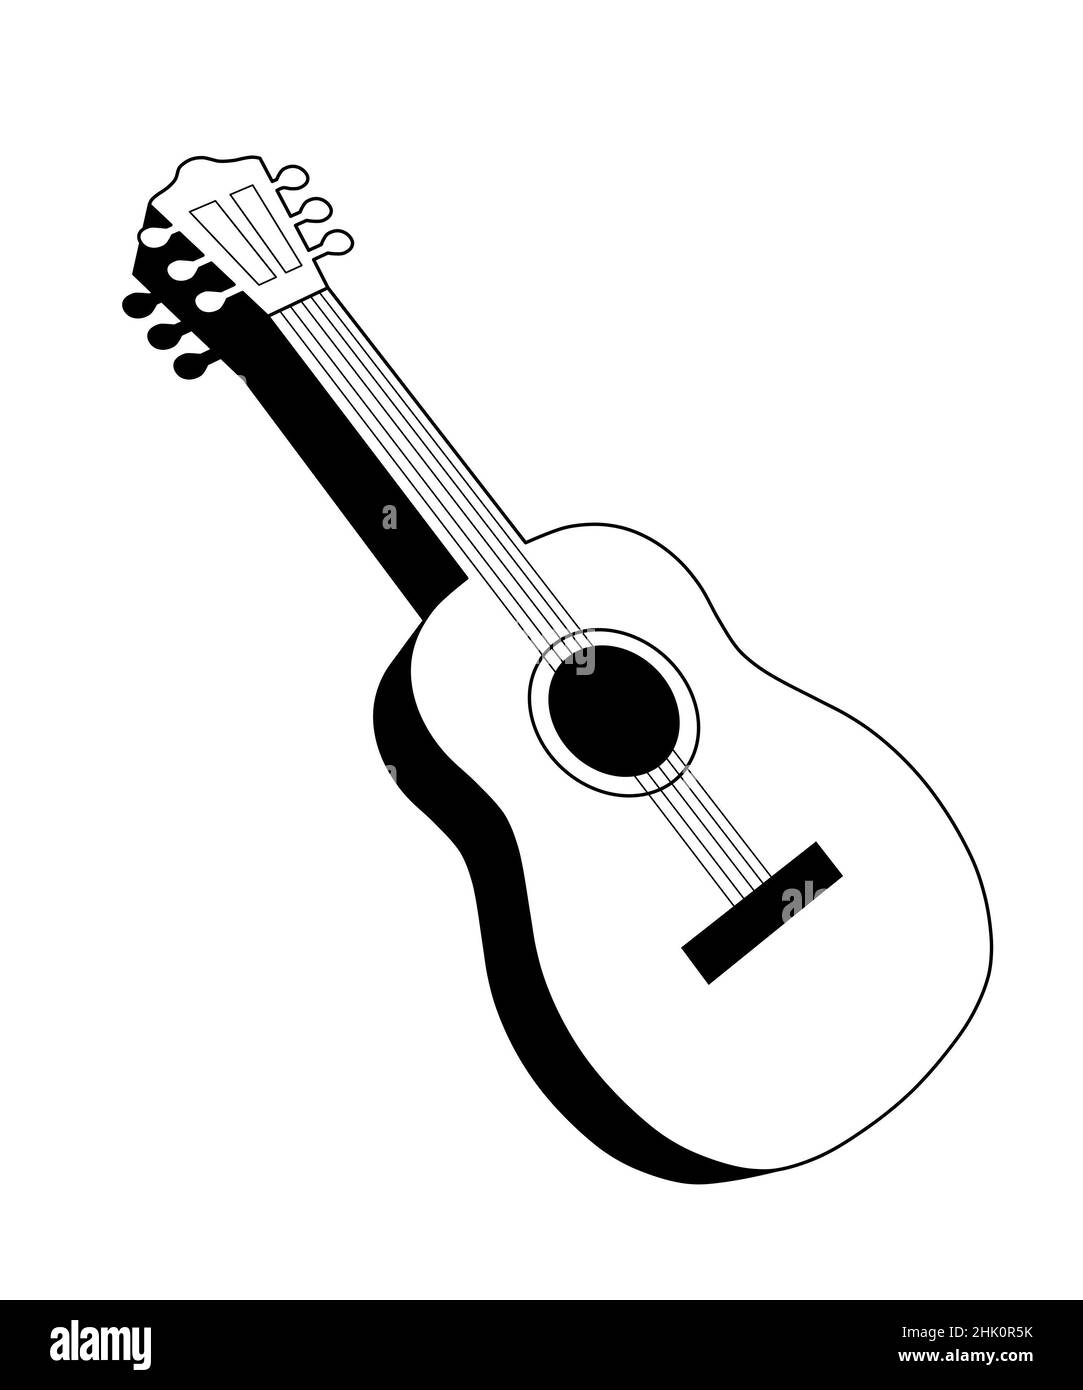 chitarra acustica in bianco e nero, semplice illustrazione isolata su sfondo bianco Foto Stock